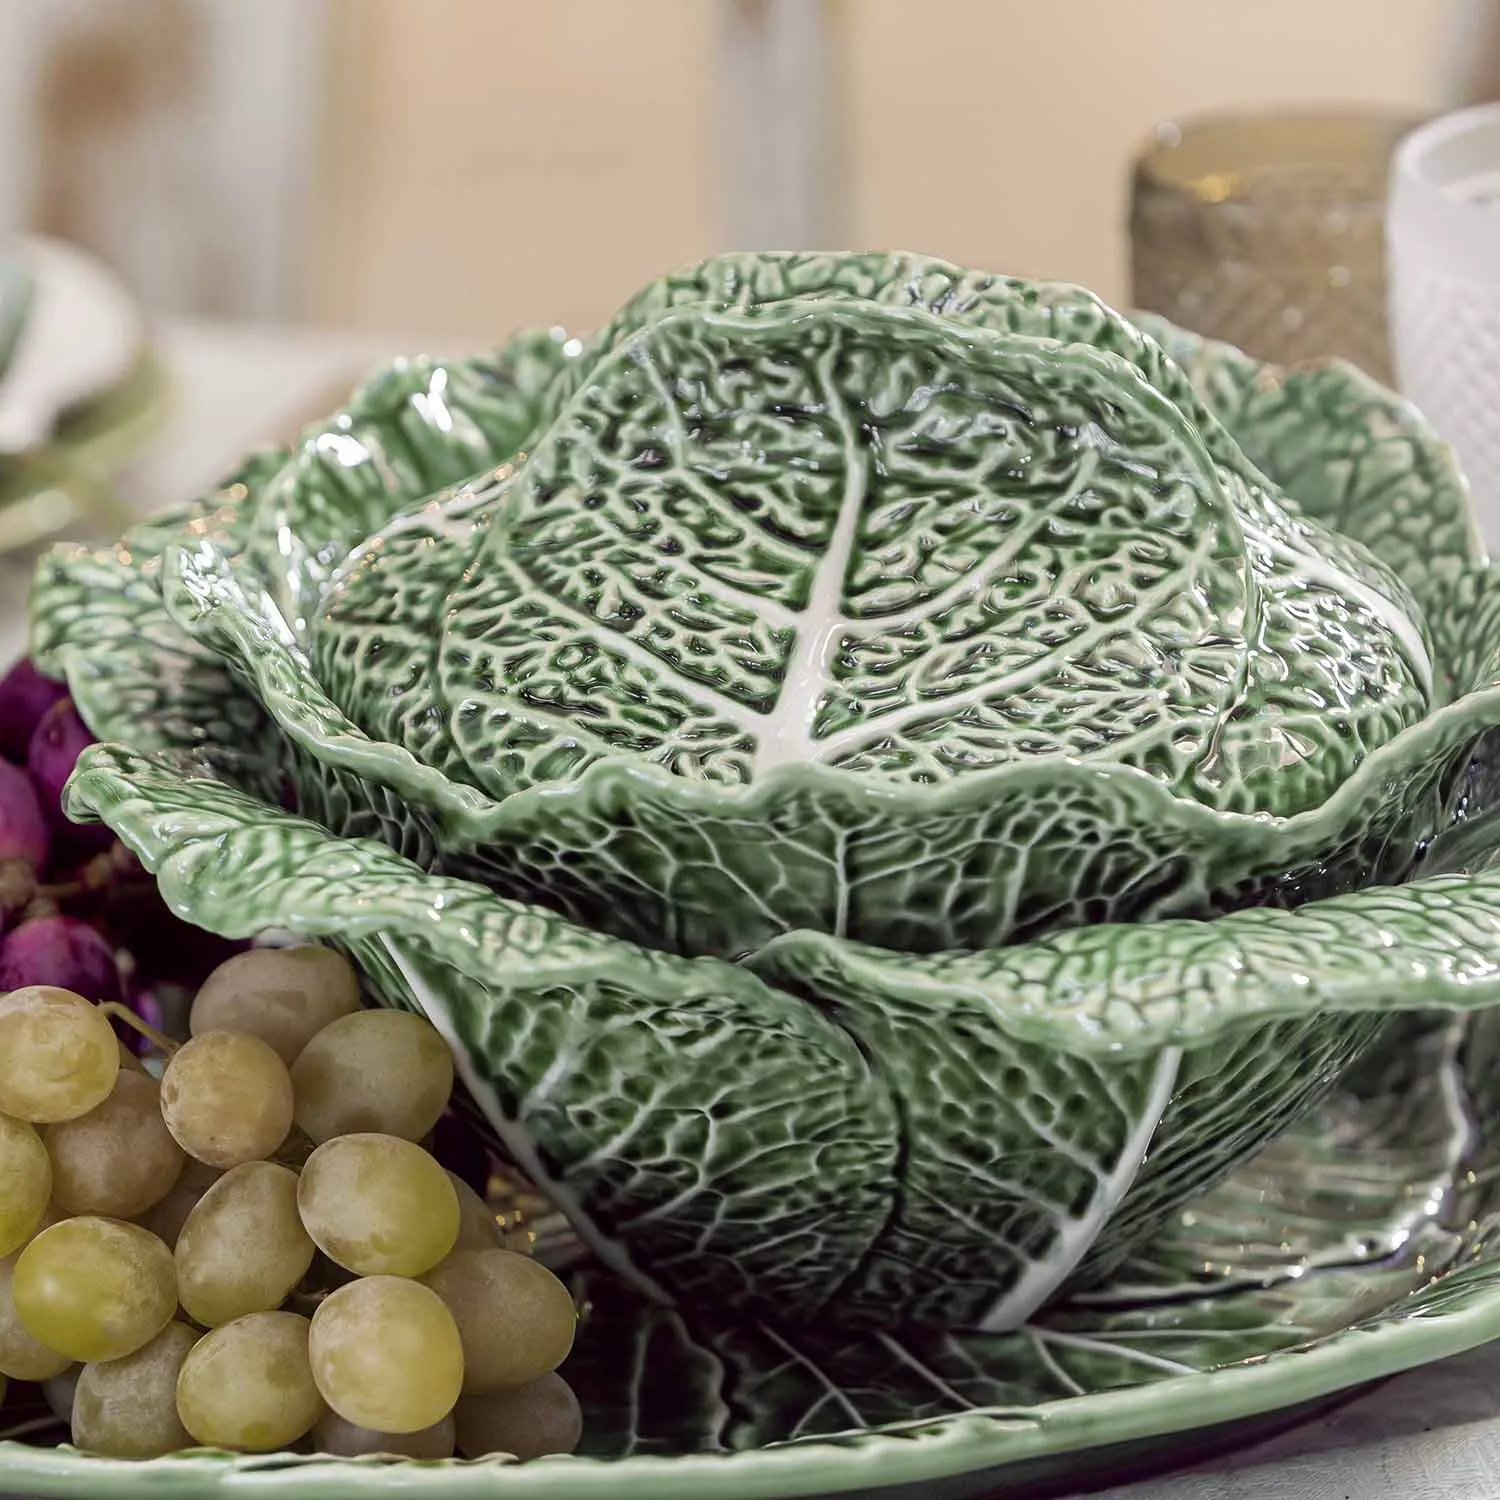 Bordallo Pinheiro Cabbage Green Oval Platter, 17"